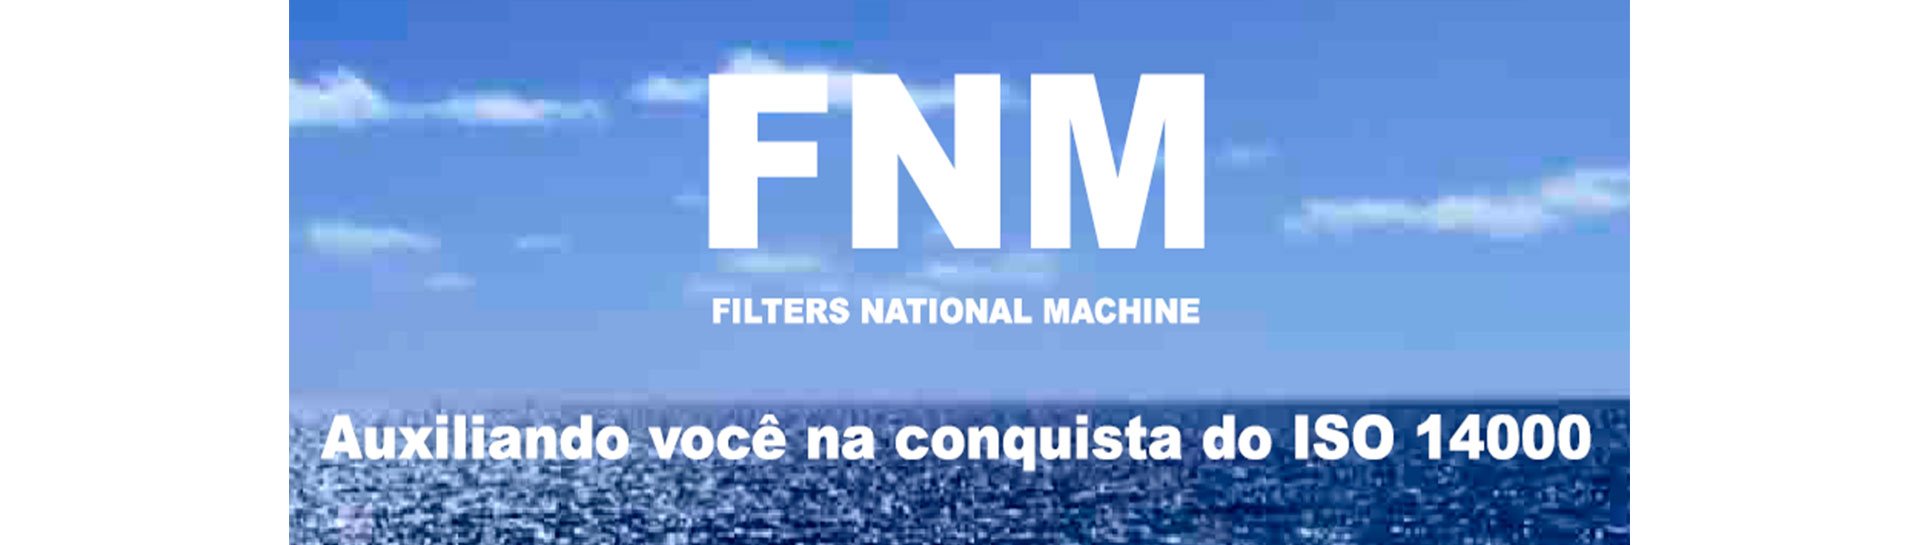 FNM - FILTRANS - Tecnologia em filtragem industrial